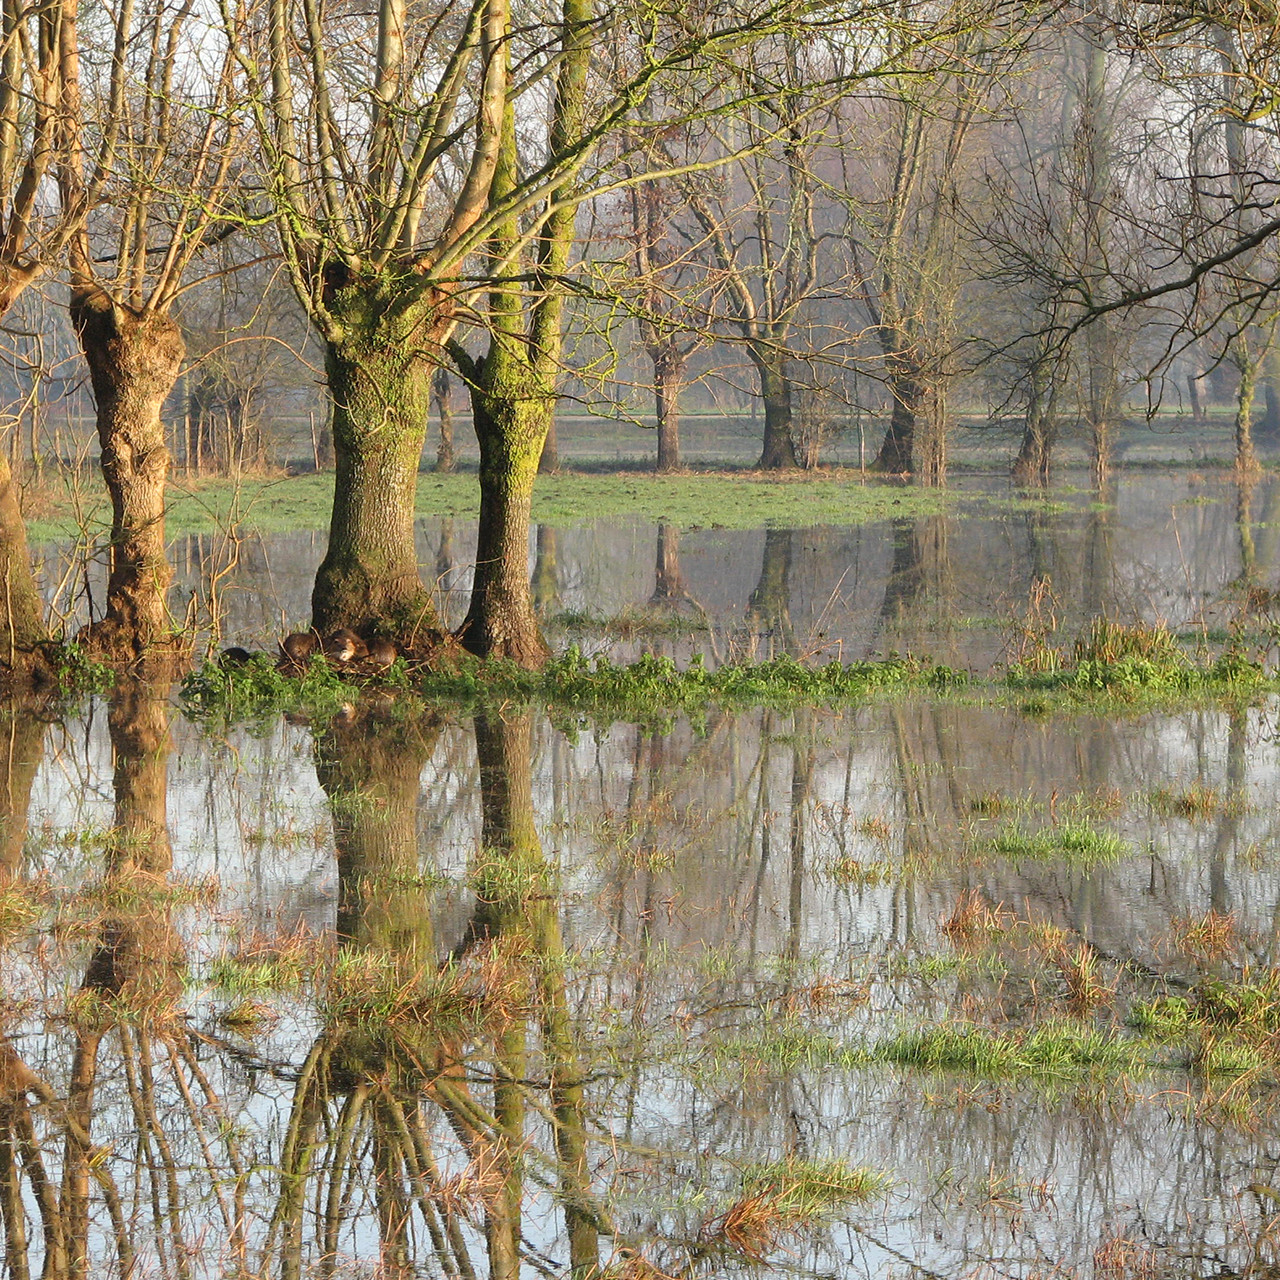 Le marais mouillé inondé, une image fréquente en hiver dans le Marais poitevin